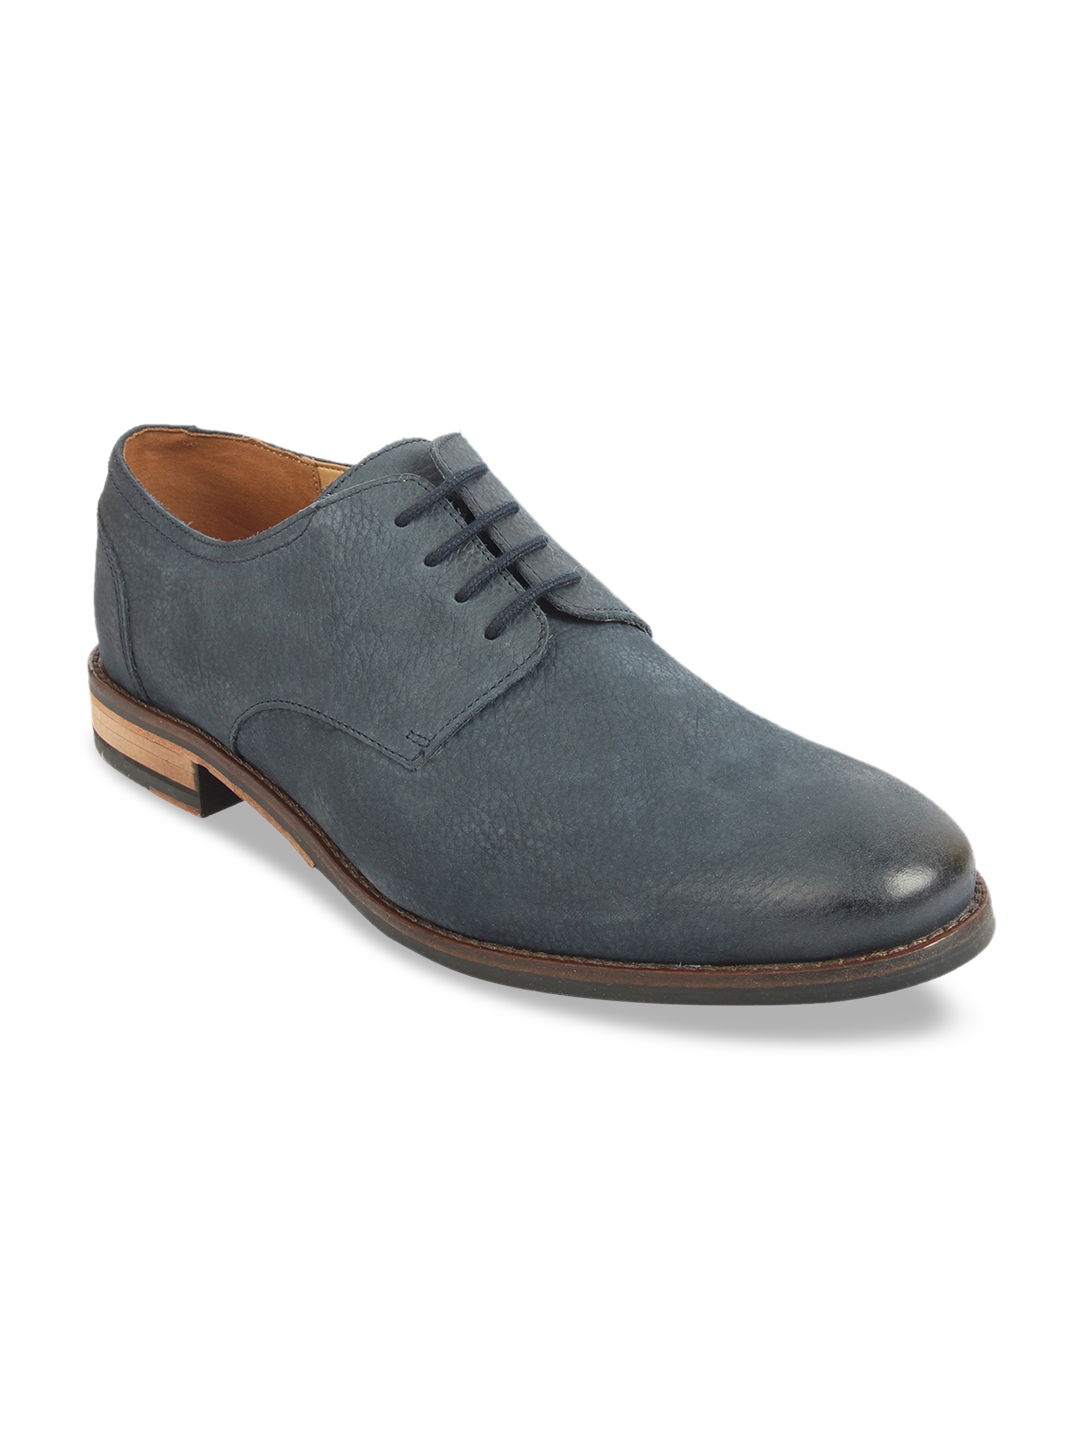 Buy Clarks Men Navy Blue Textured Formal Derbys - Formal Shoes for Men ...